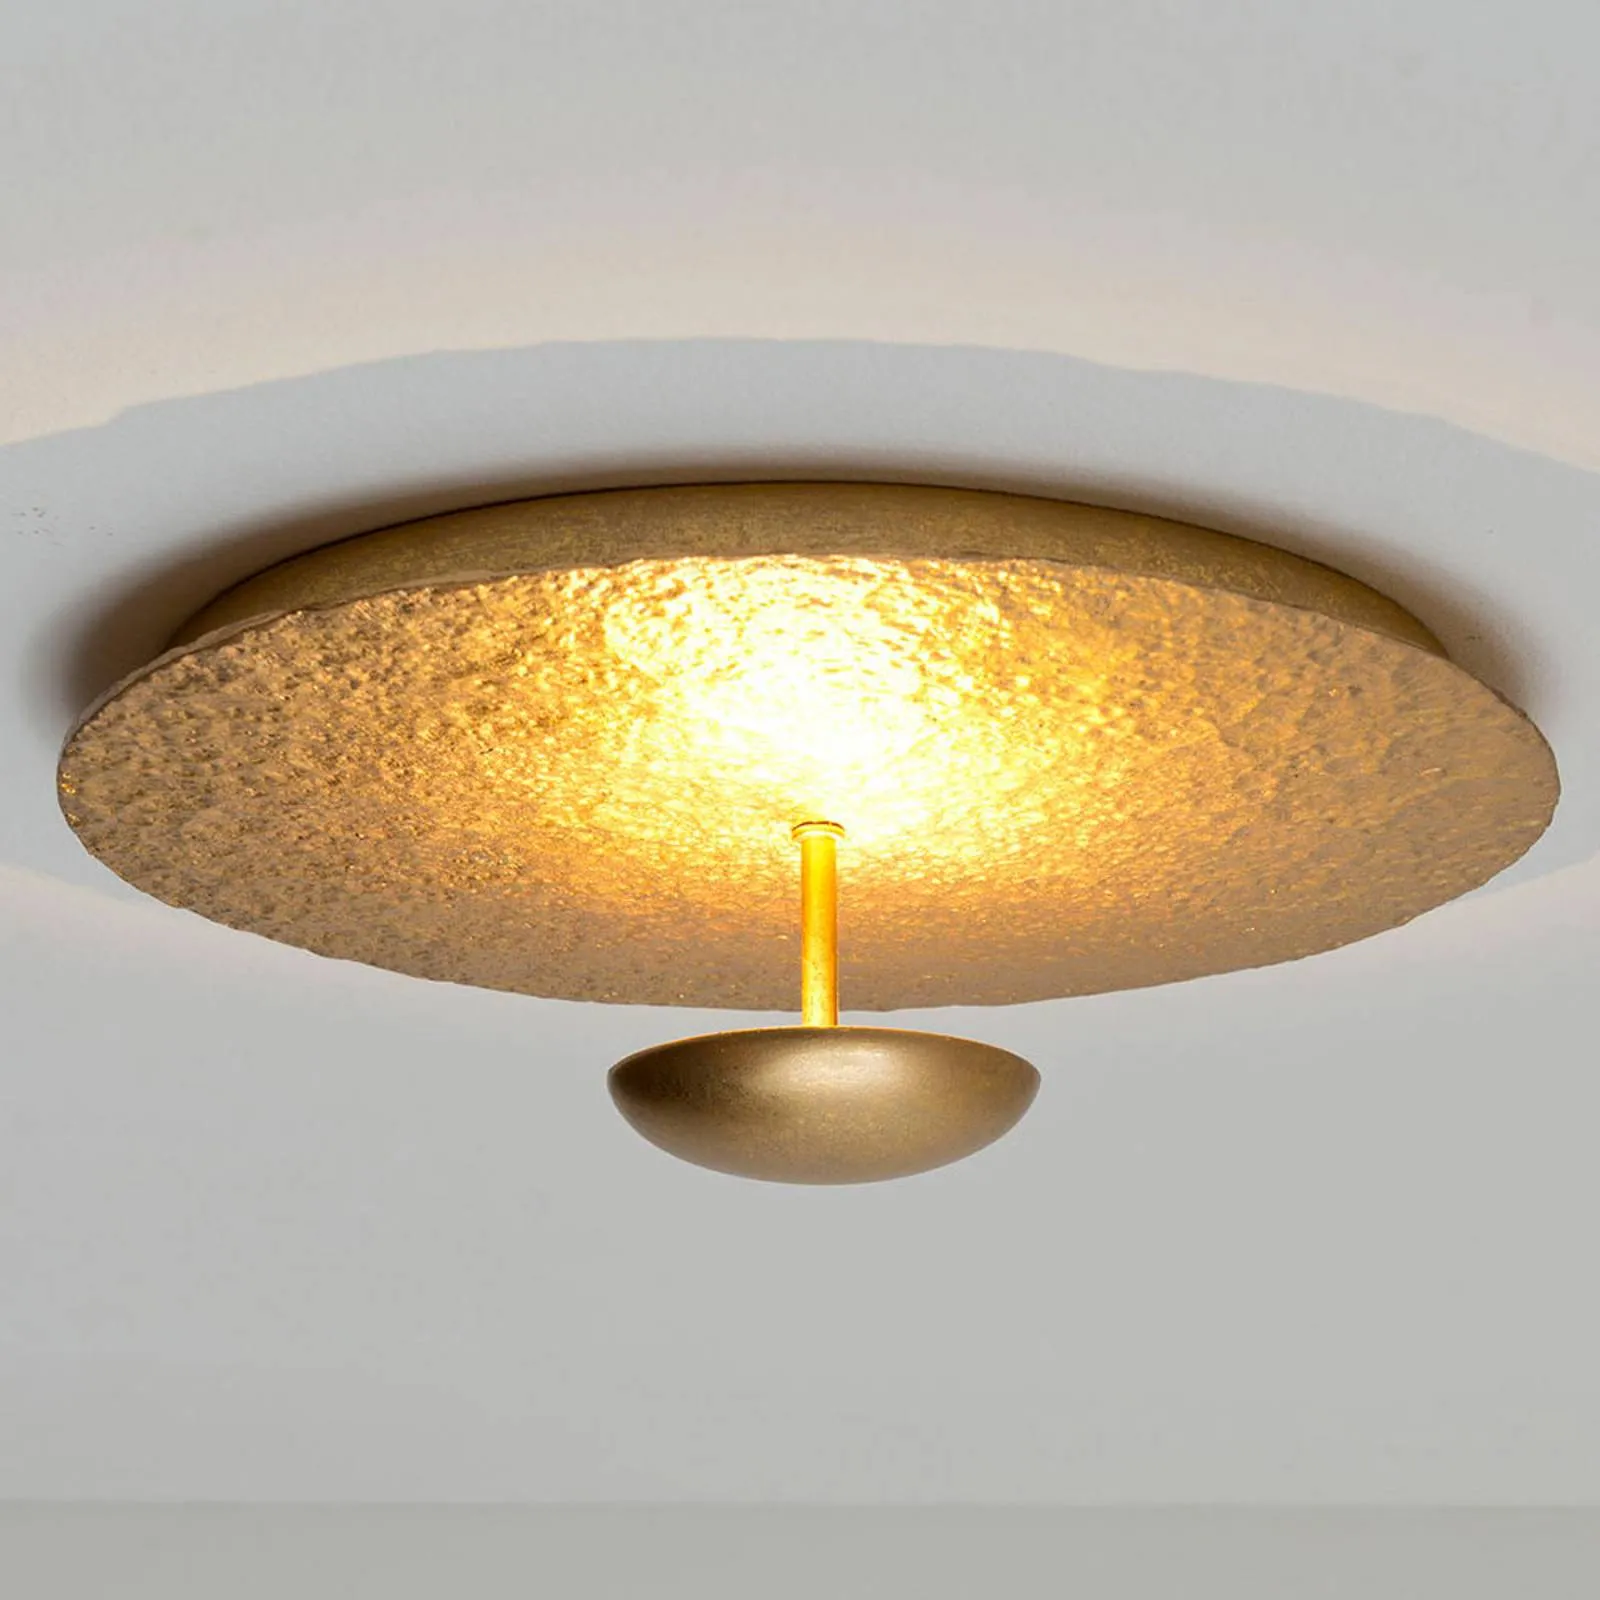 Polpetta LED ceiling light